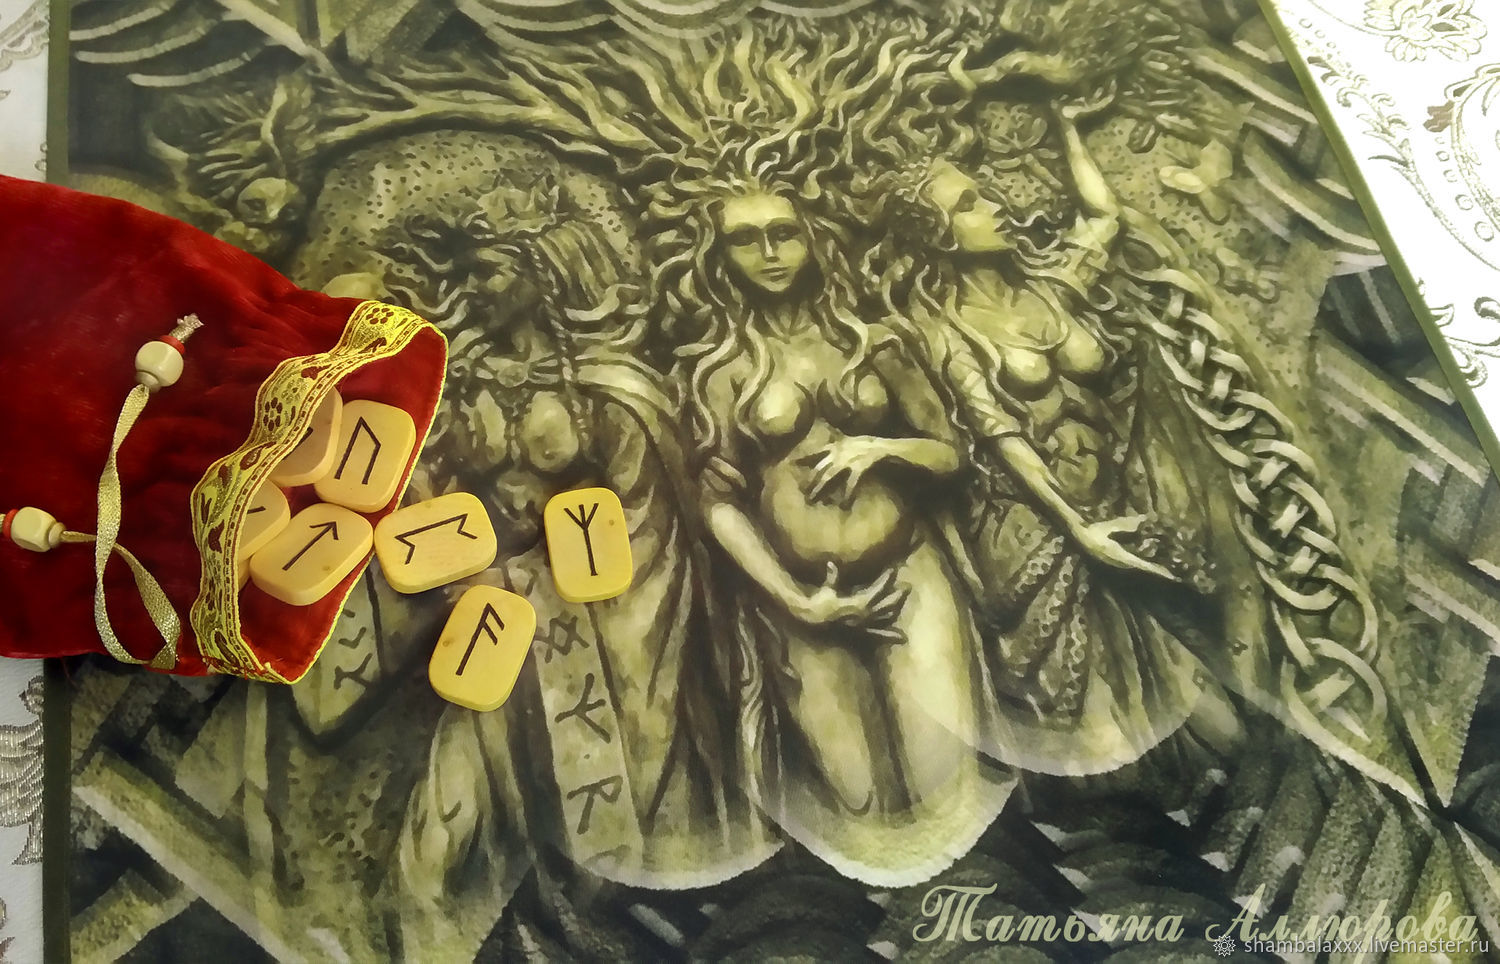 Tablecloth Three Norns (Goddesses of Destiny), divination and rituals, Runes, Ufa,  Фото №1